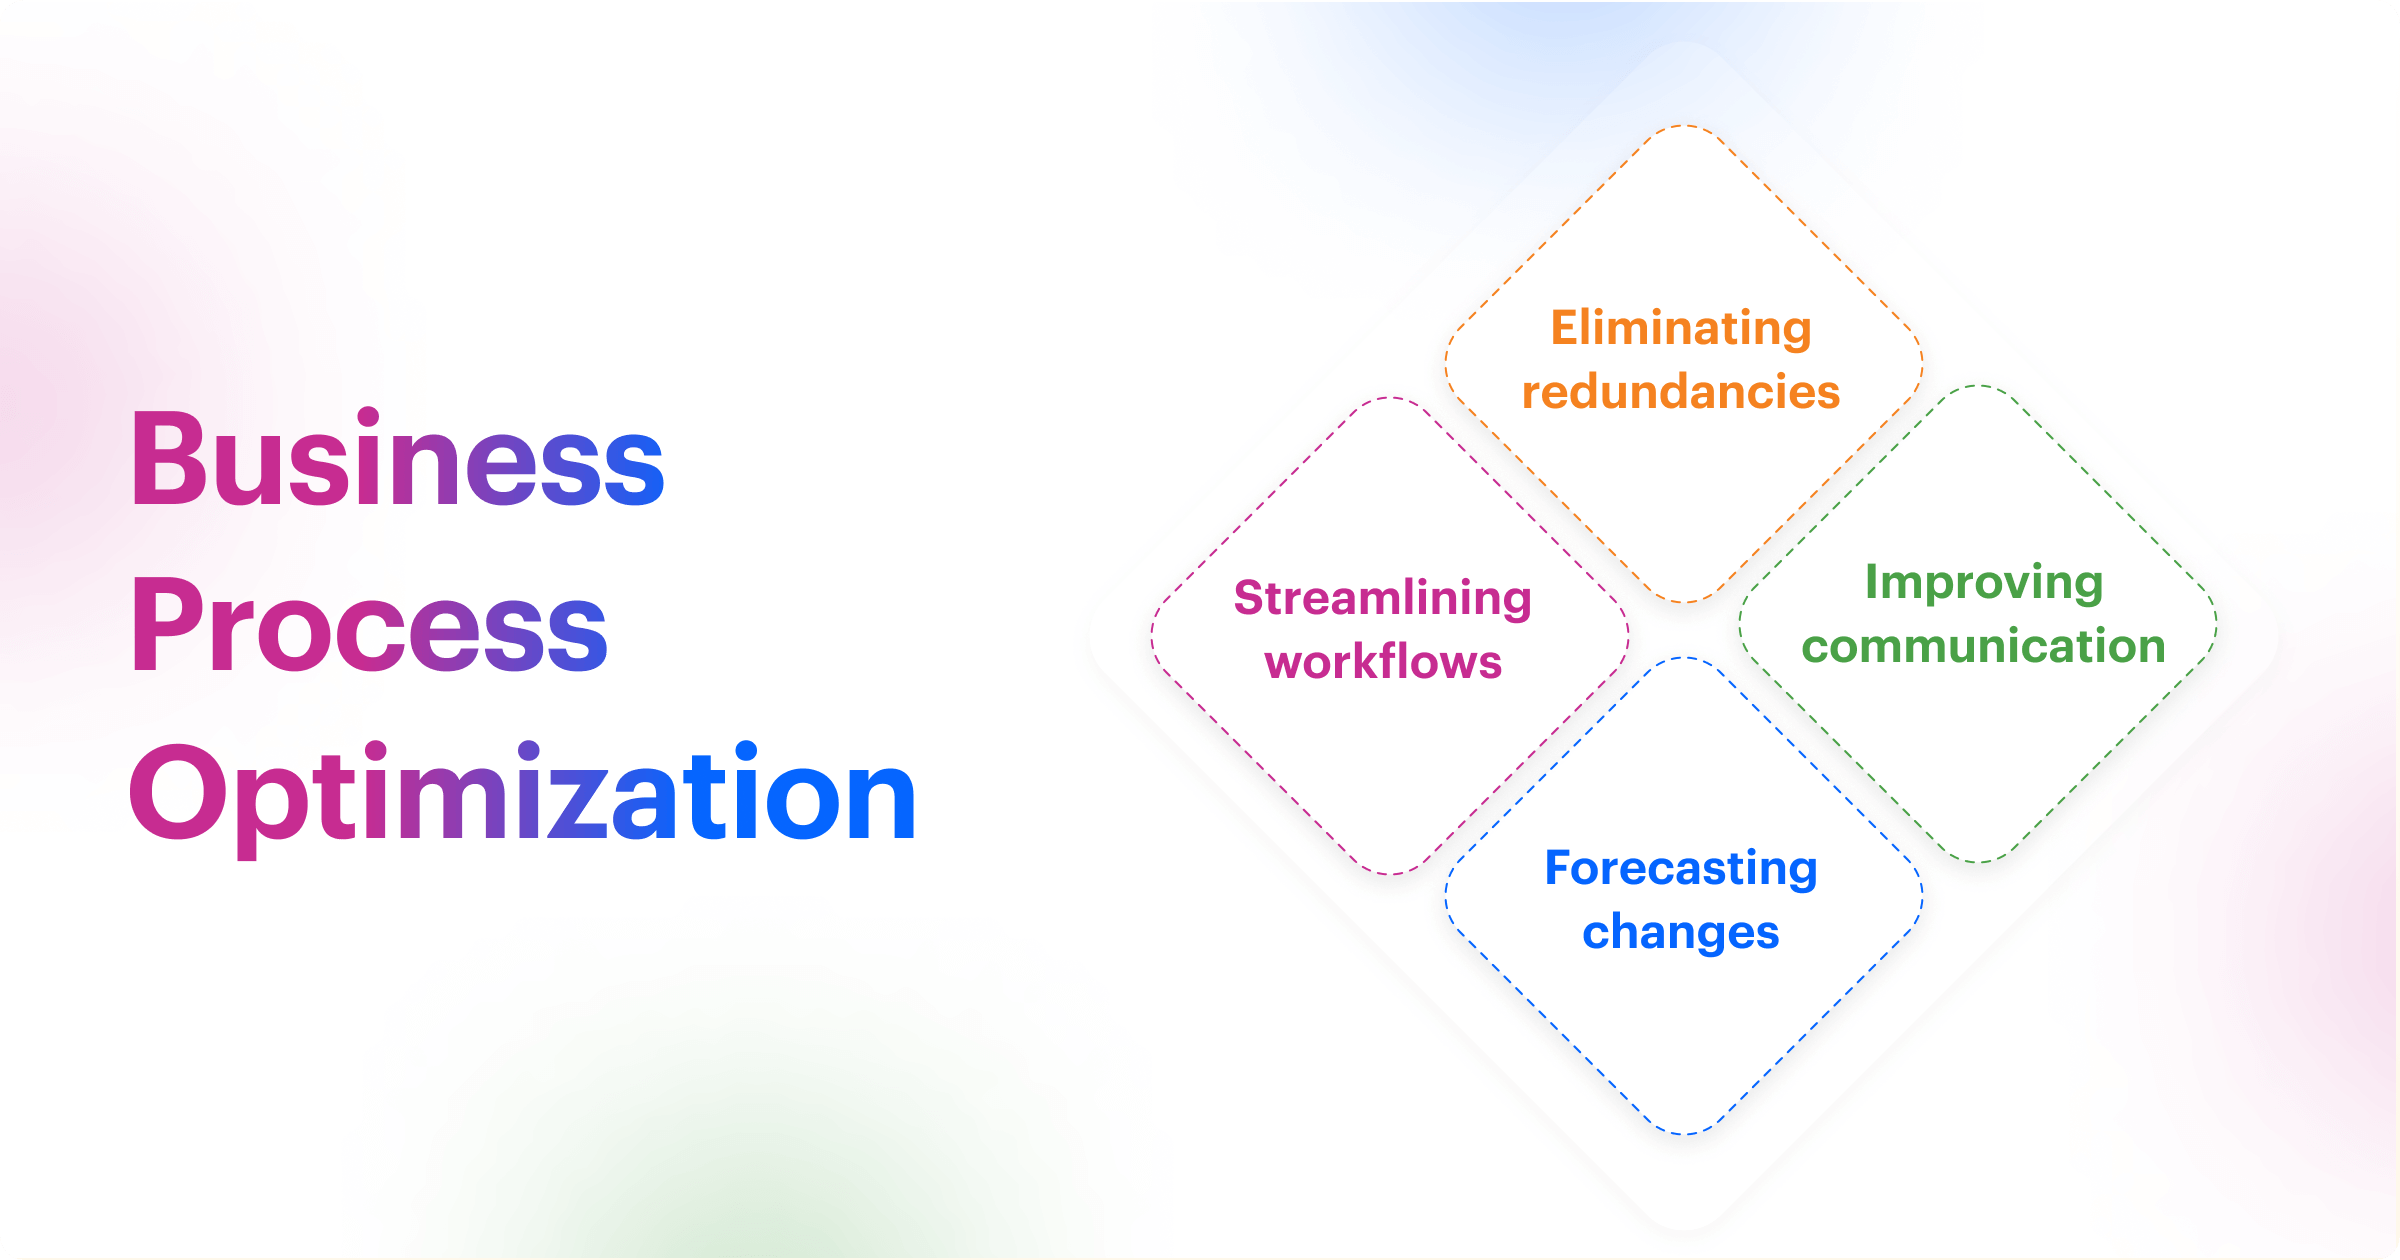 Business Process Optimization